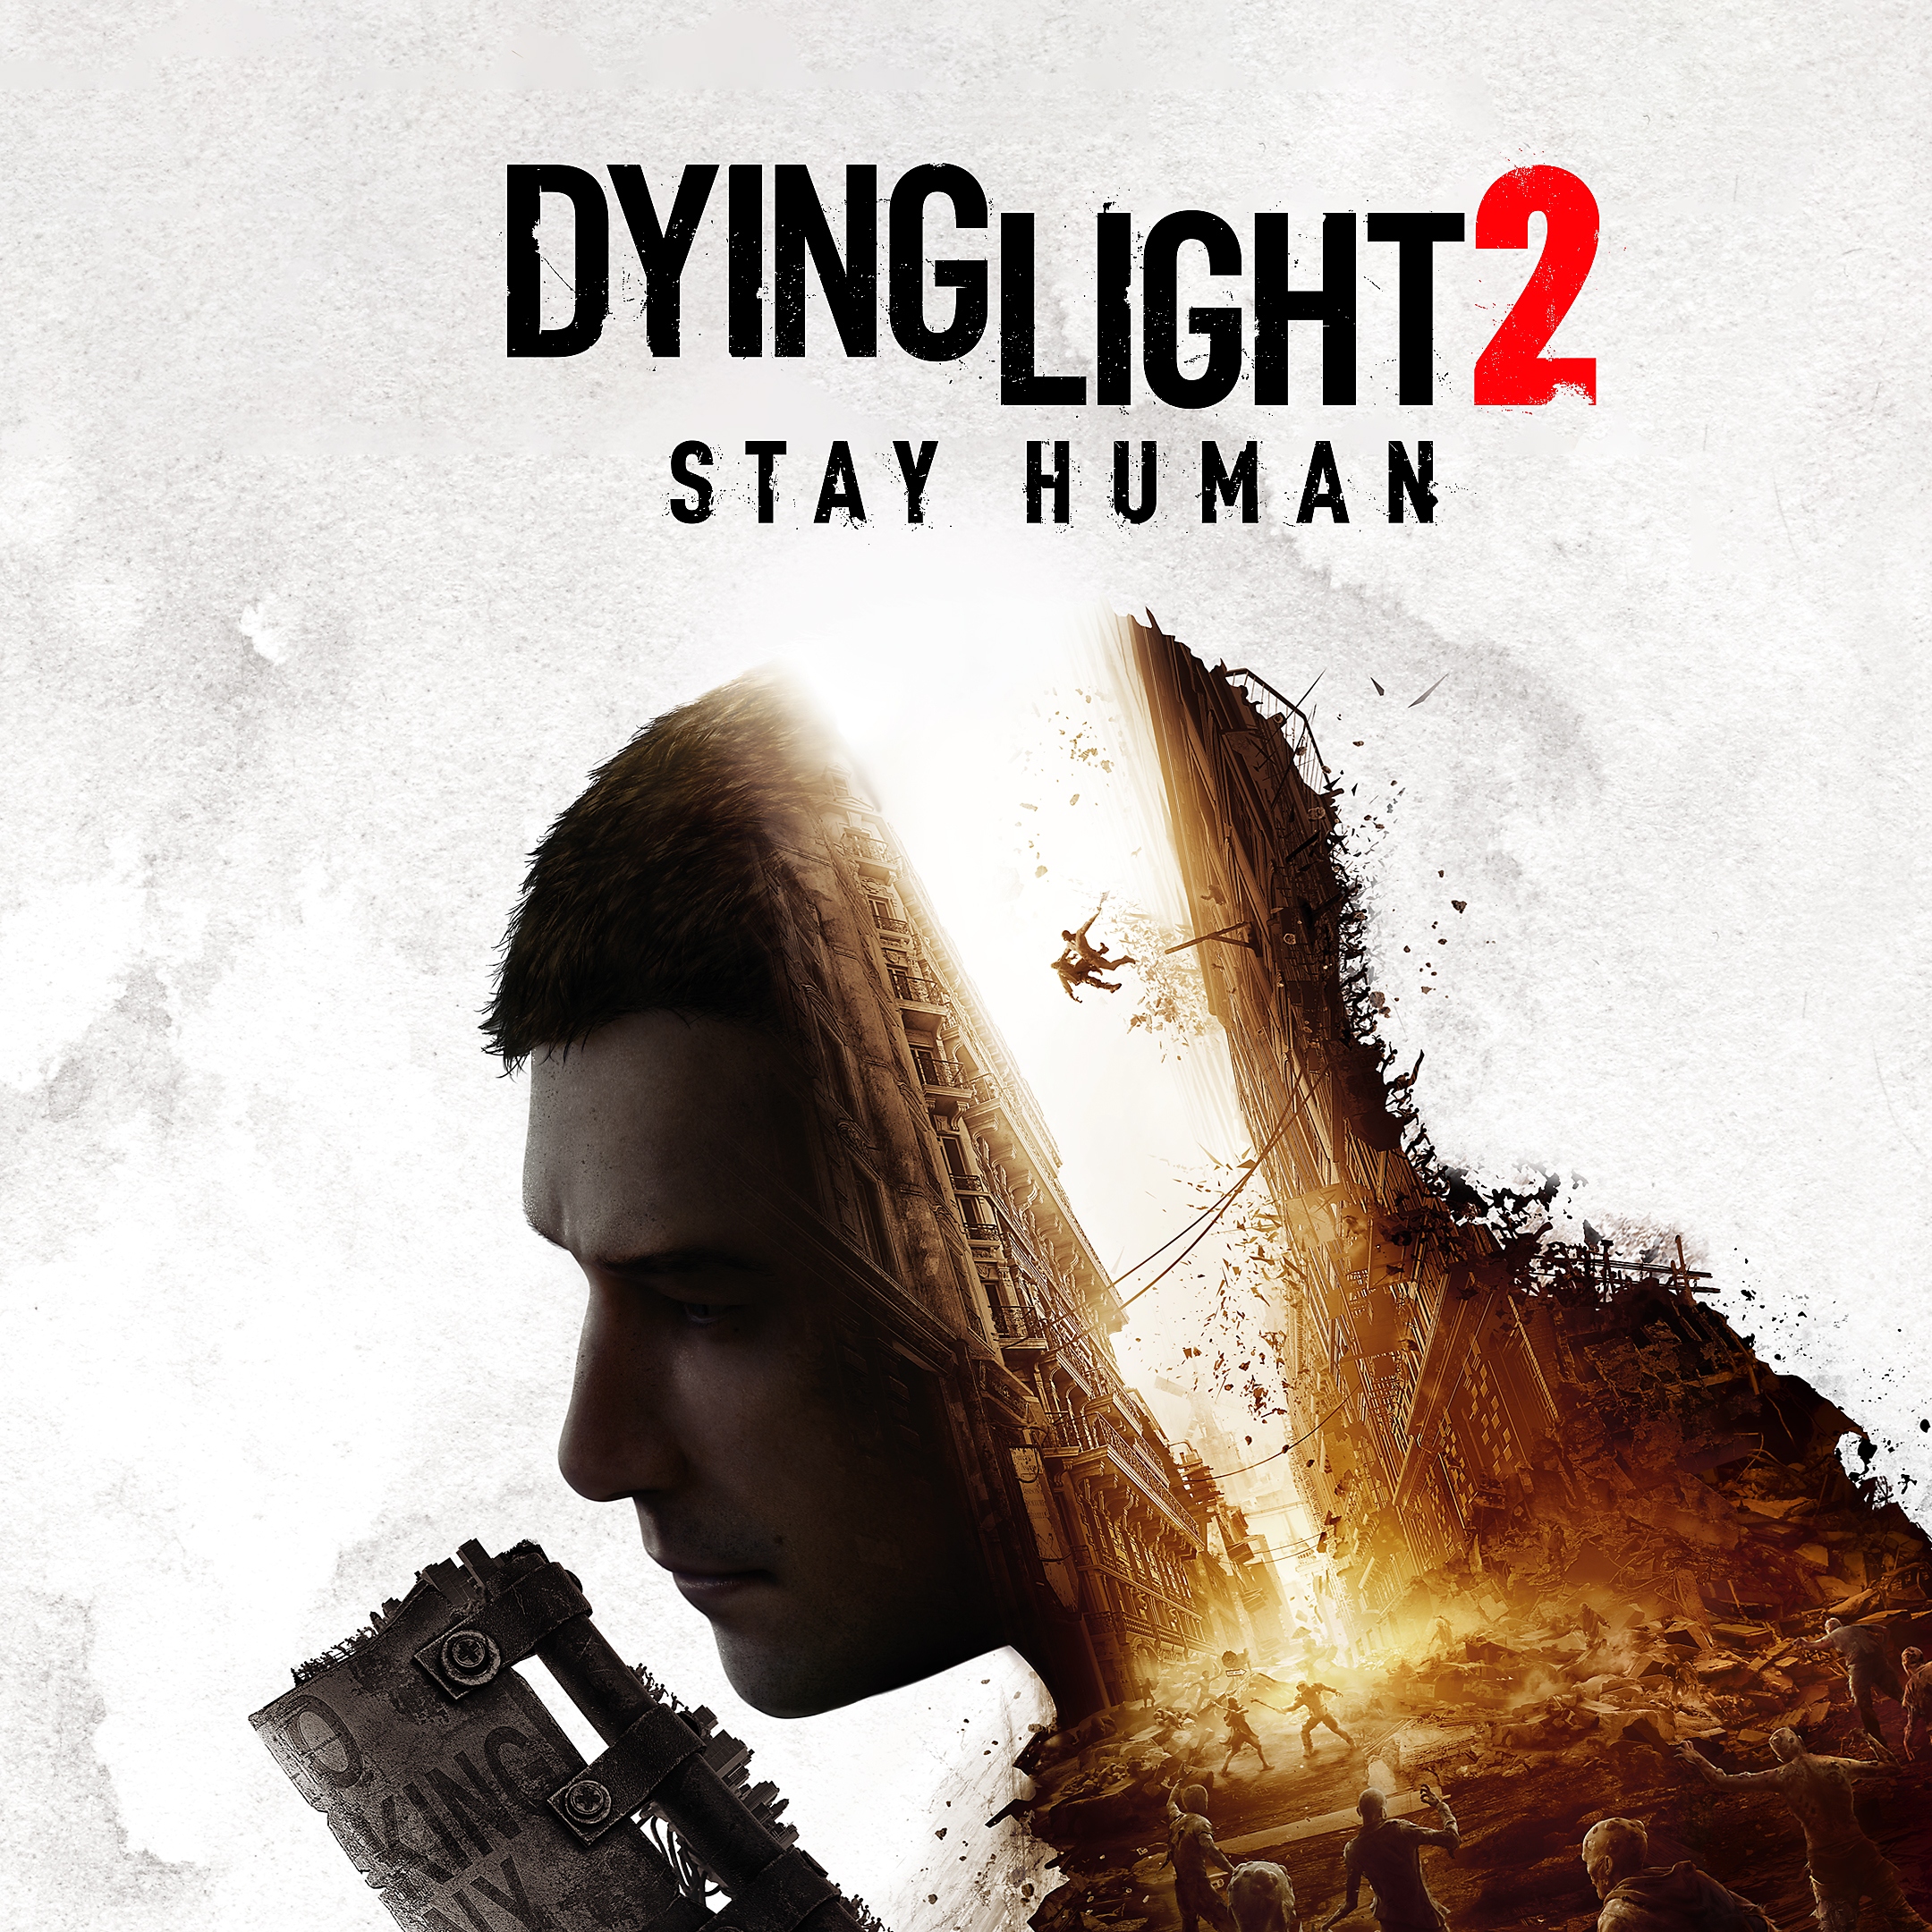 Dying light 2 stay human – obrázek z obchodu